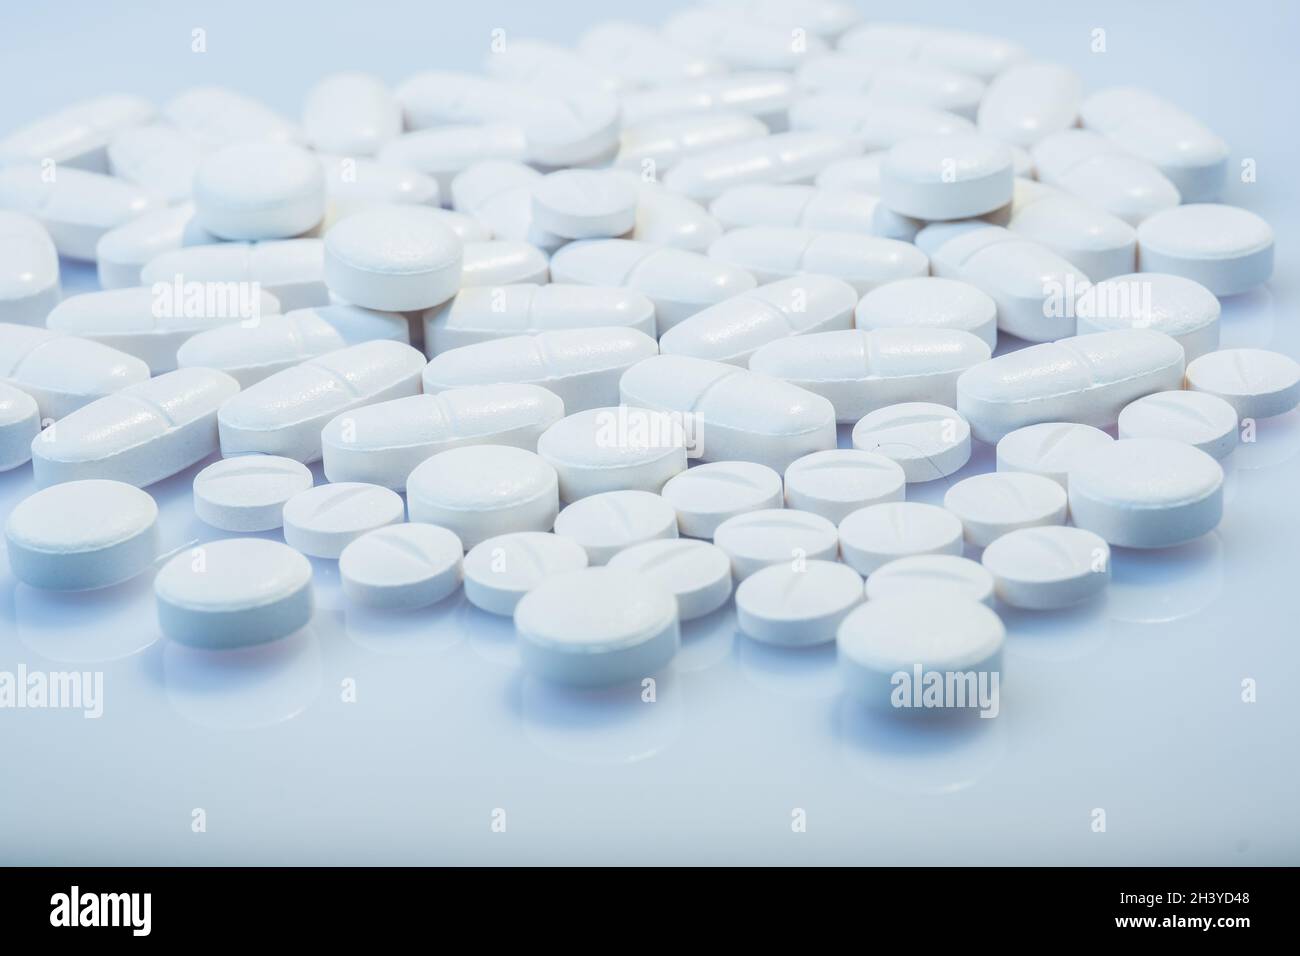 Helsinki / Finnland - 31. OKTOBER 2021: Nahaufnahme von weißen Pillen vor weißem Hintergrund. Stockfoto